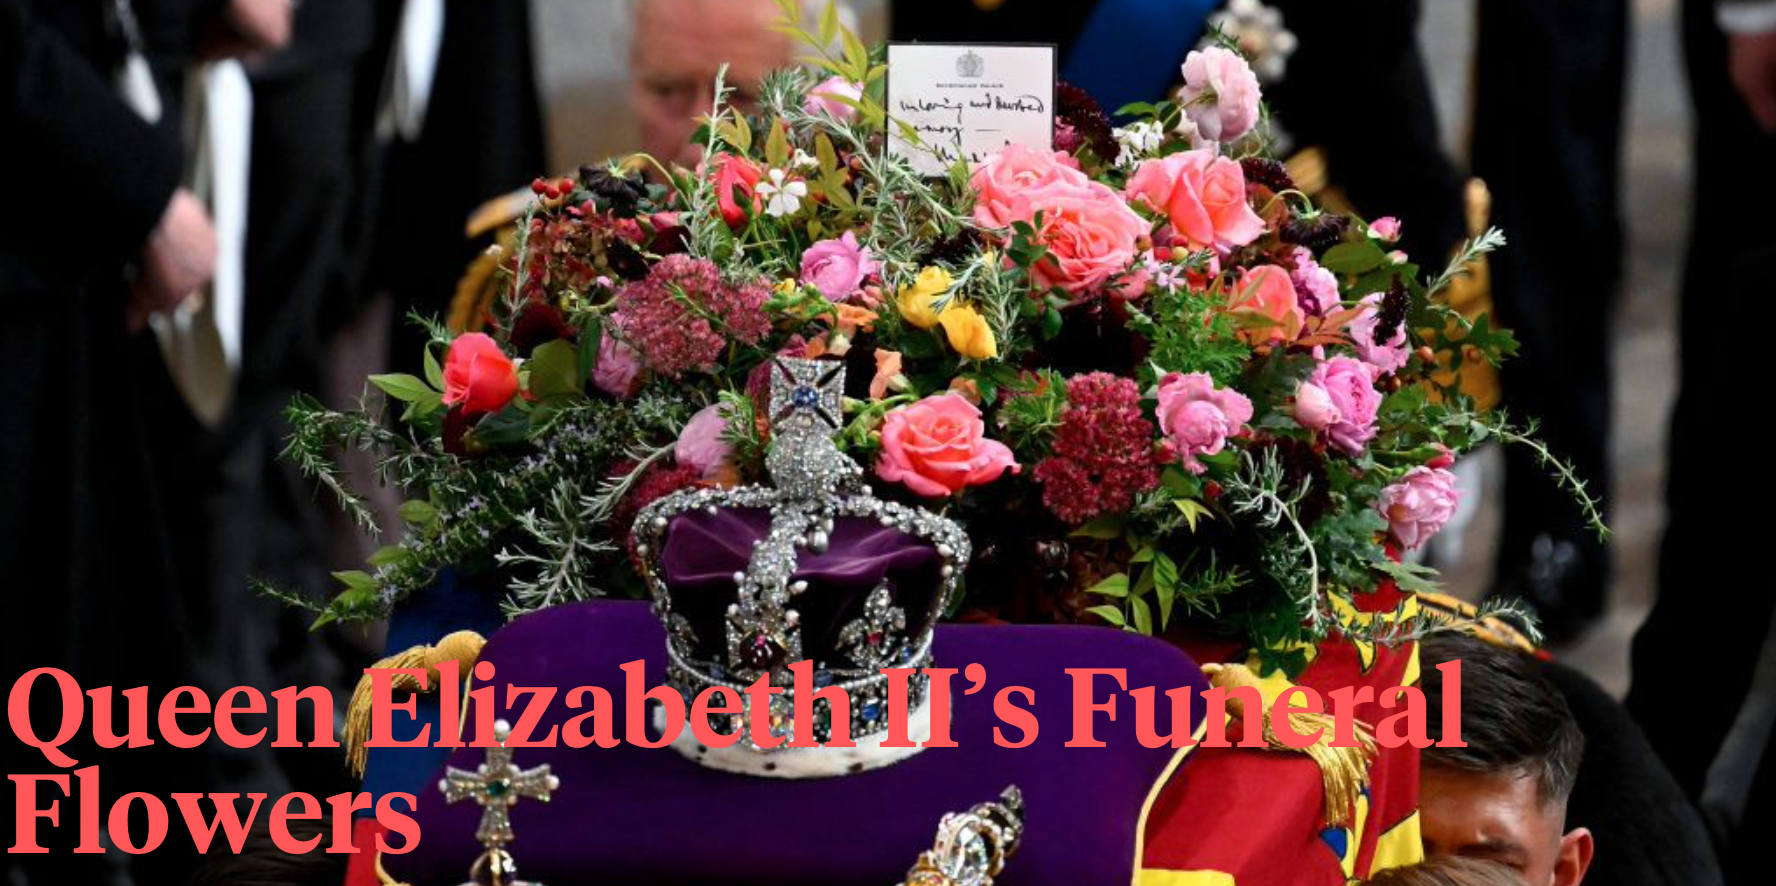 Queen Elizabeth II’s Funeral Flowers